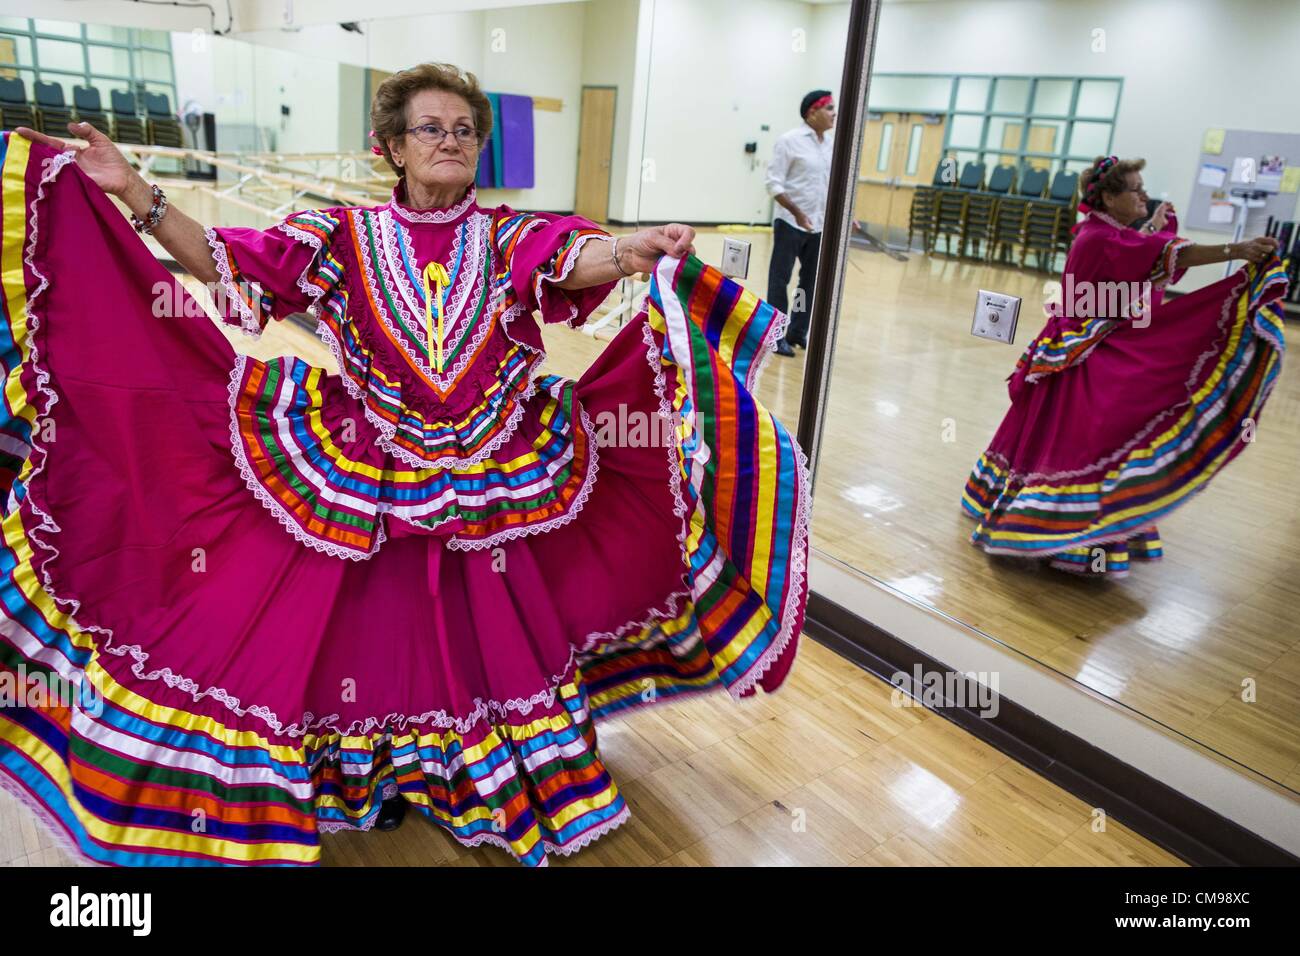 27. Juni 2012 - wirbelt Glendale, Arizona, USA - CARLINDA REBELO, 71 Jahre alt, in ihr buntes Kleid während der Proben für die Senior-Fiesta-Tänzer Mittelpunkt Erwachsenen Glendale in Arizona, einem Vorort von Phoenix. Tanzen wie ein Teil des Trainingsprogramm nicht ungewöhnlich ist, aber die Senior Fiesta Tänzer mexikanischen Stil Folklorico Tänze für ihr Workout verwenden. Die Senior-Fiesta-Tänzer haben zusammen seit 15 Jahren durchgeführt. Sie erhalten jede Woche für Proben zusammen und führen in Pflegeheimen und Ruhestand Zentren in der Gegend von Phoenix, einmal im Monat oder so. Ihre energetische mexikanischen Folklorico danc Stockfoto